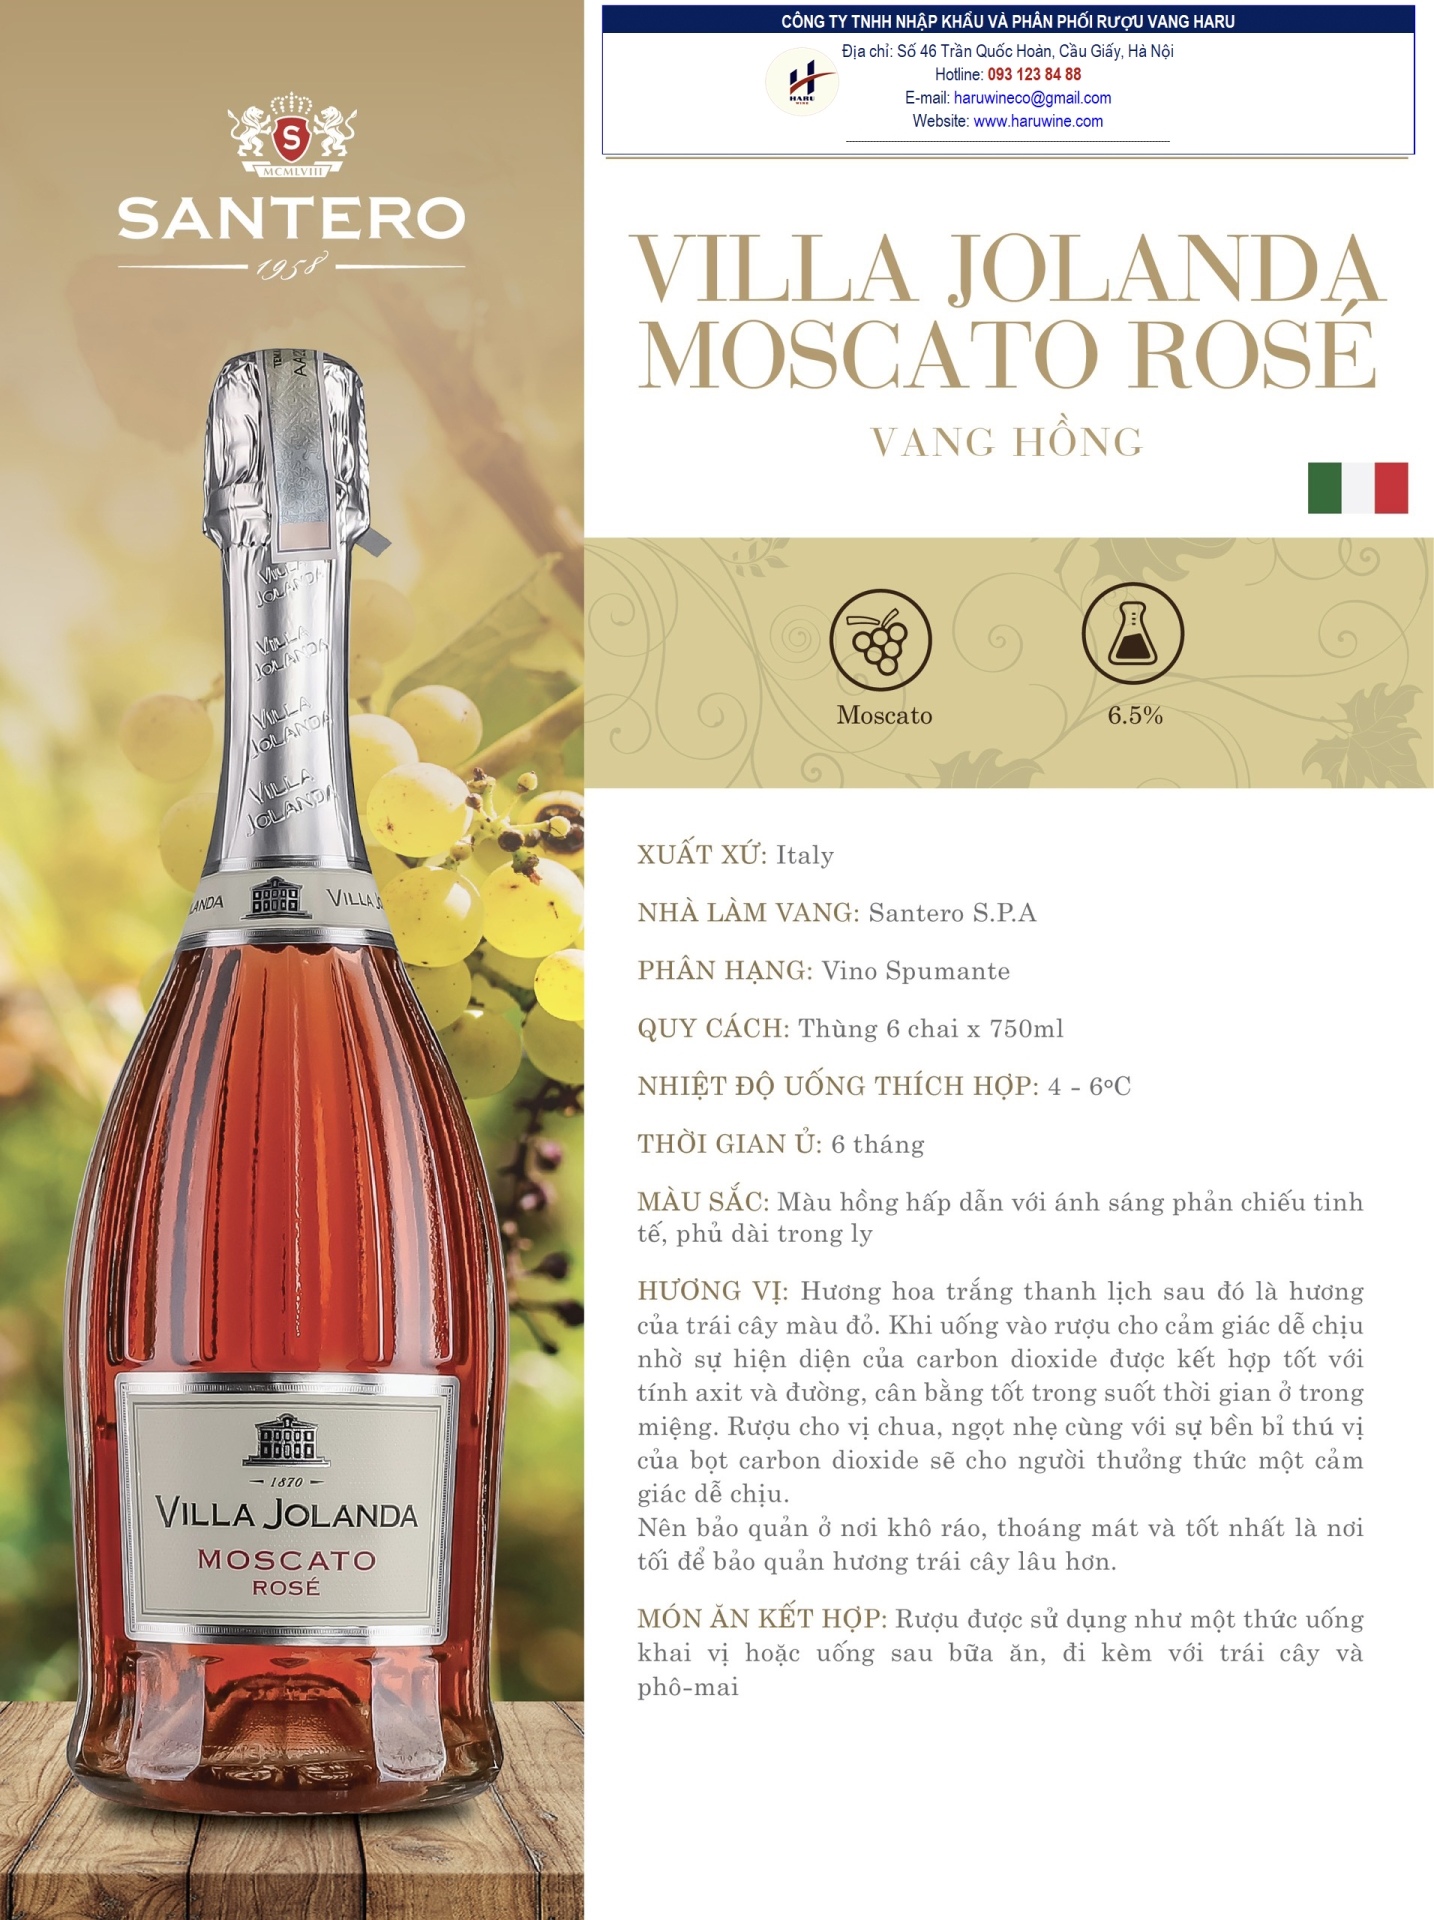 Rượu vang hồng Villa jolanda moscato rose